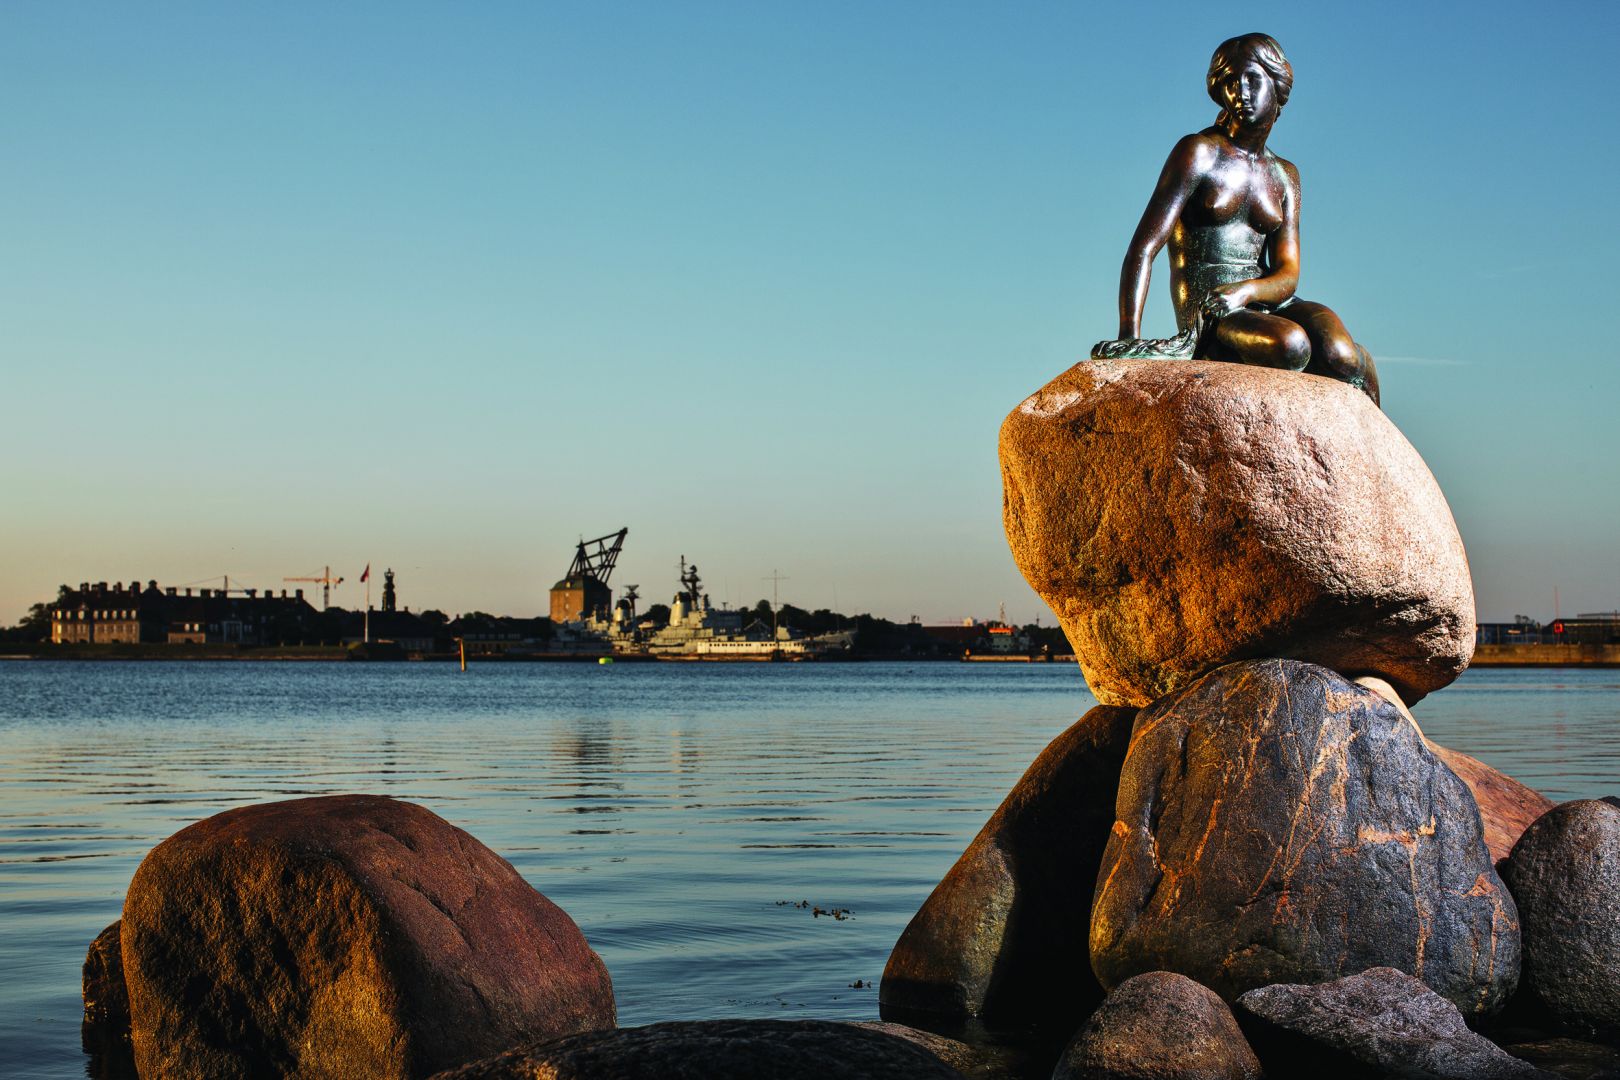 Scenic Scandinavia & its Fjords | The Little Mermaid, Copenhagen, Denmark